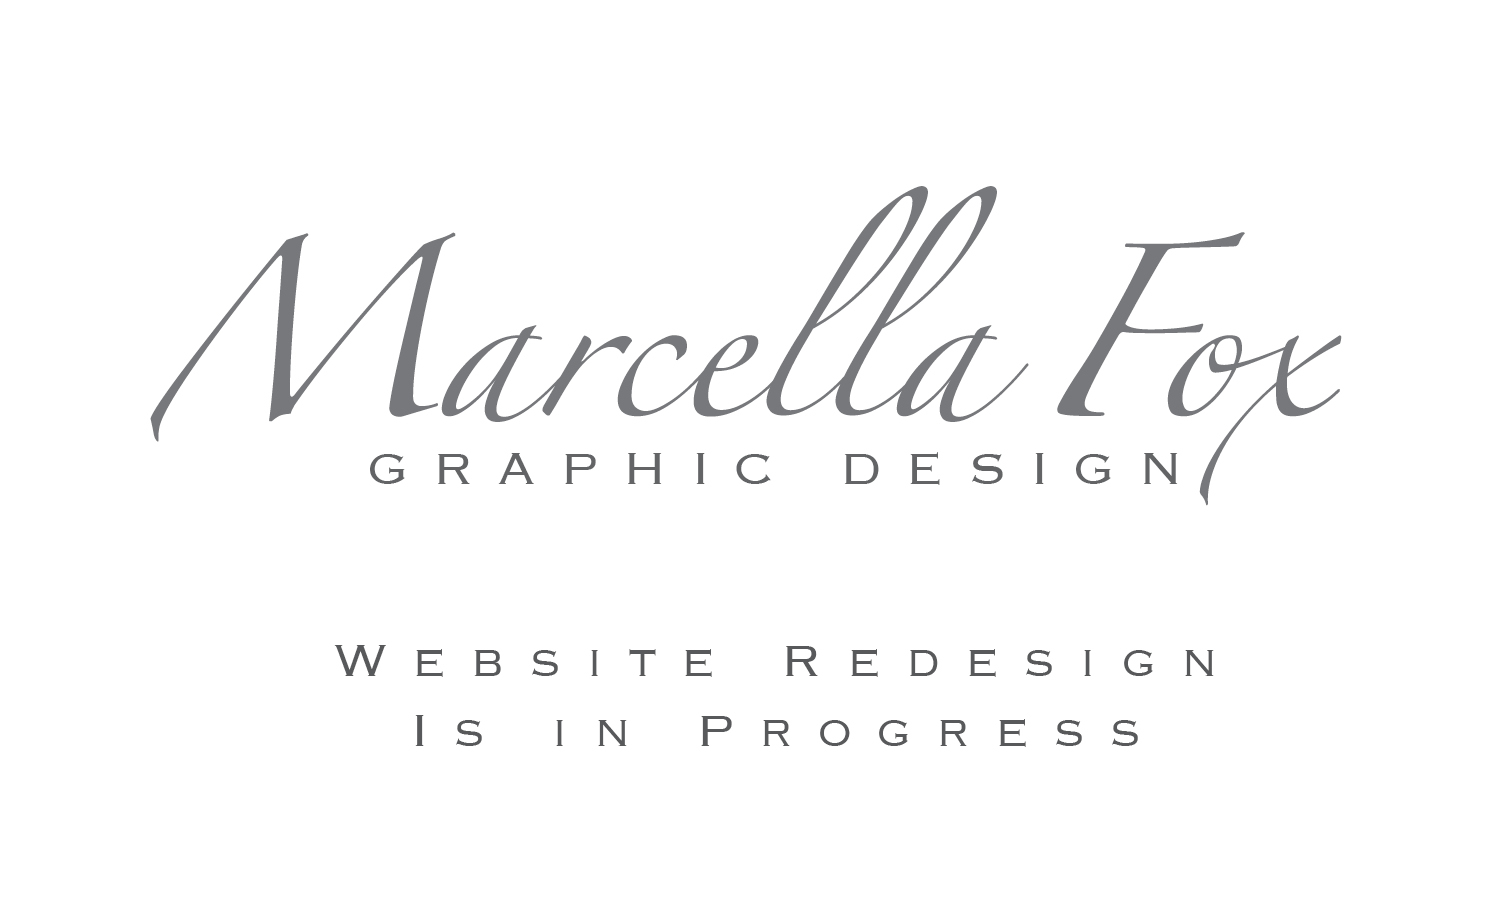 Marcella Fox Graphic Design (logotype)